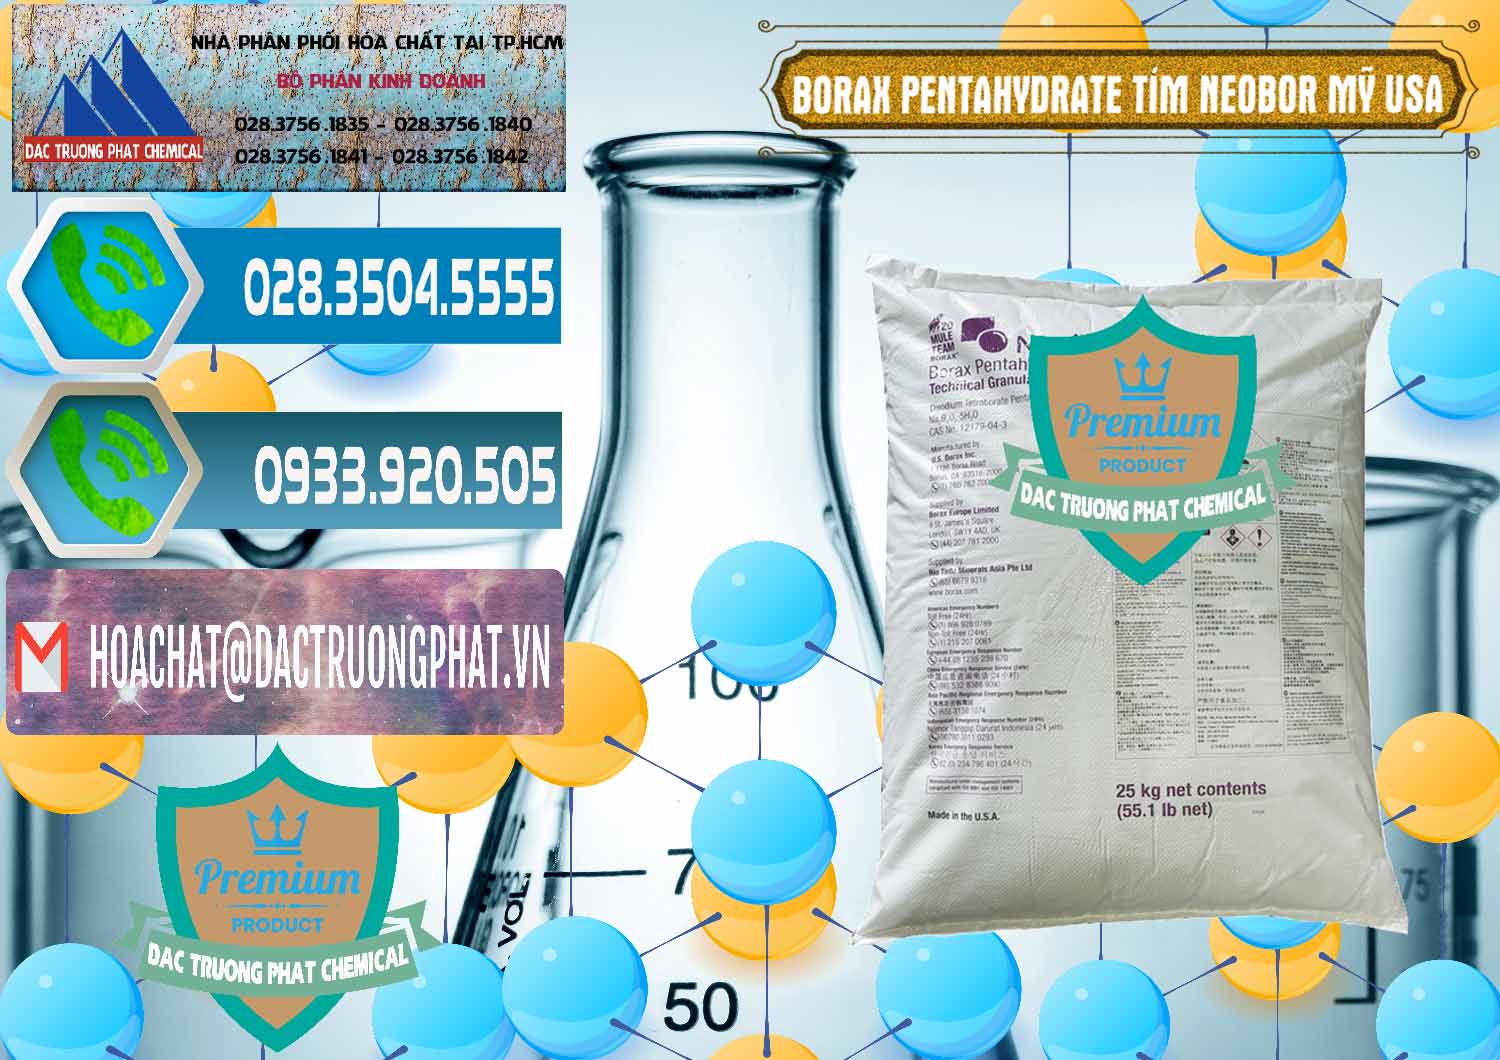 Chuyên bán & cung ứng Borax Pentahydrate Bao Tím Neobor TG Mỹ Usa - 0277 - Cty chuyên cung cấp _ kinh doanh hóa chất tại TP.HCM - congtyhoachat.net